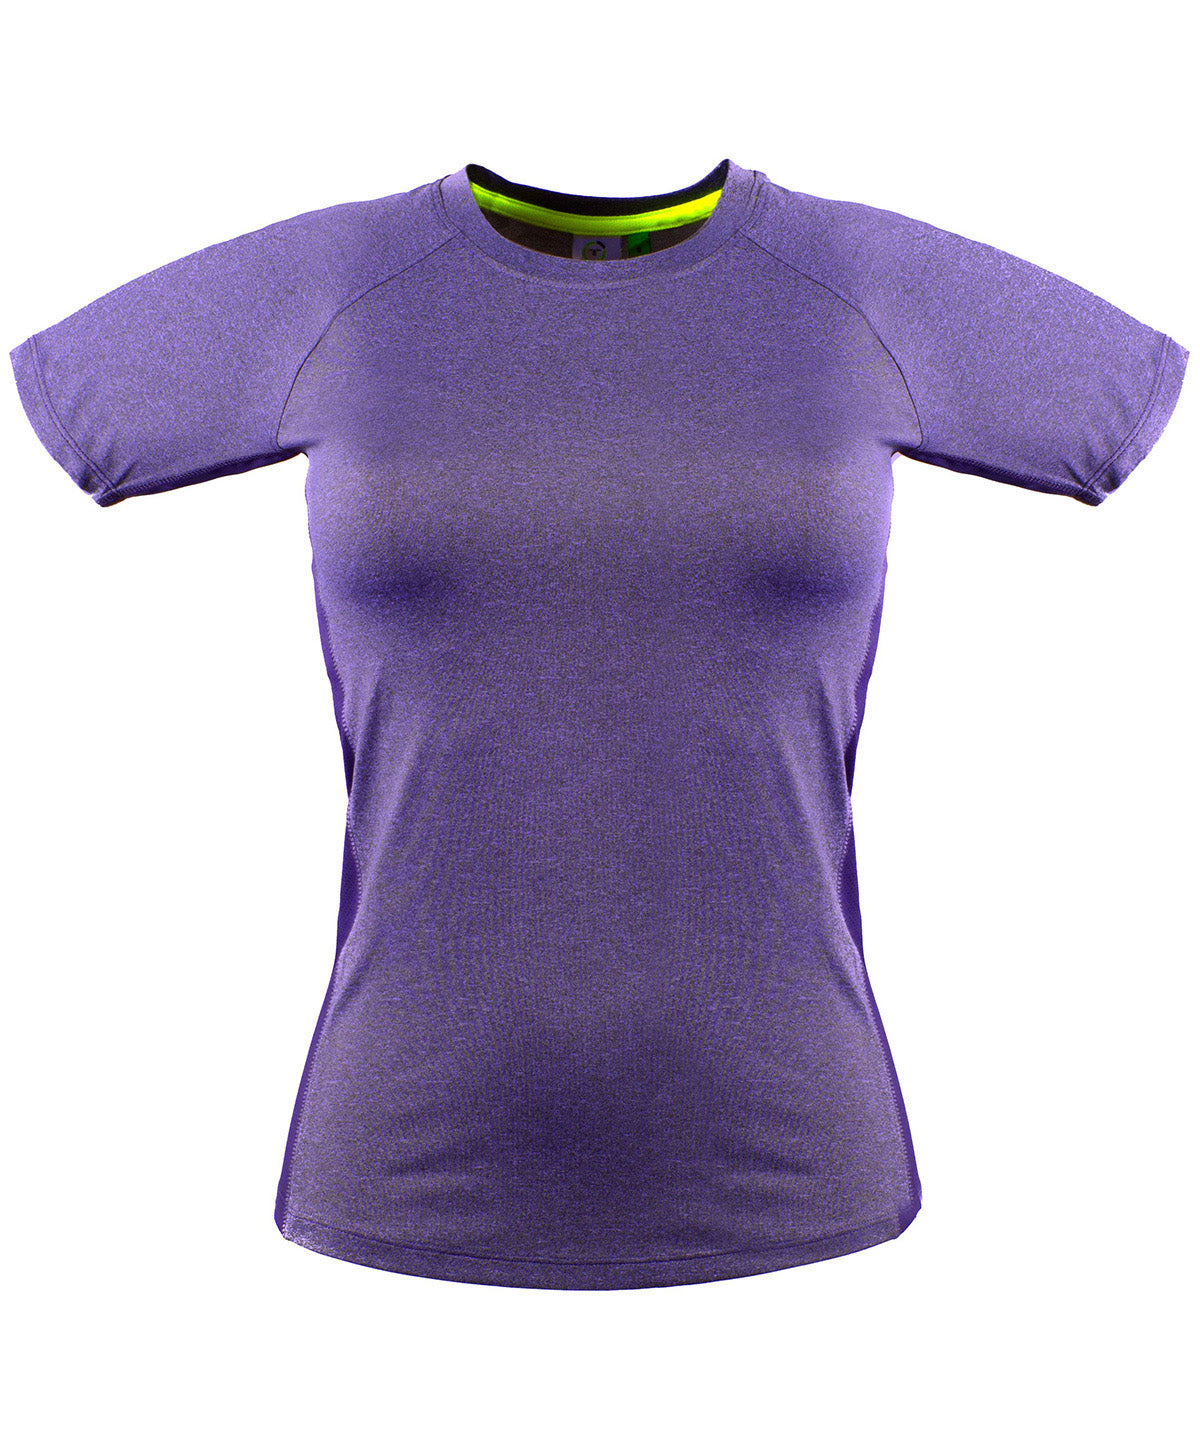 Stuttermabolir - Women's Slim Fit T-shirt